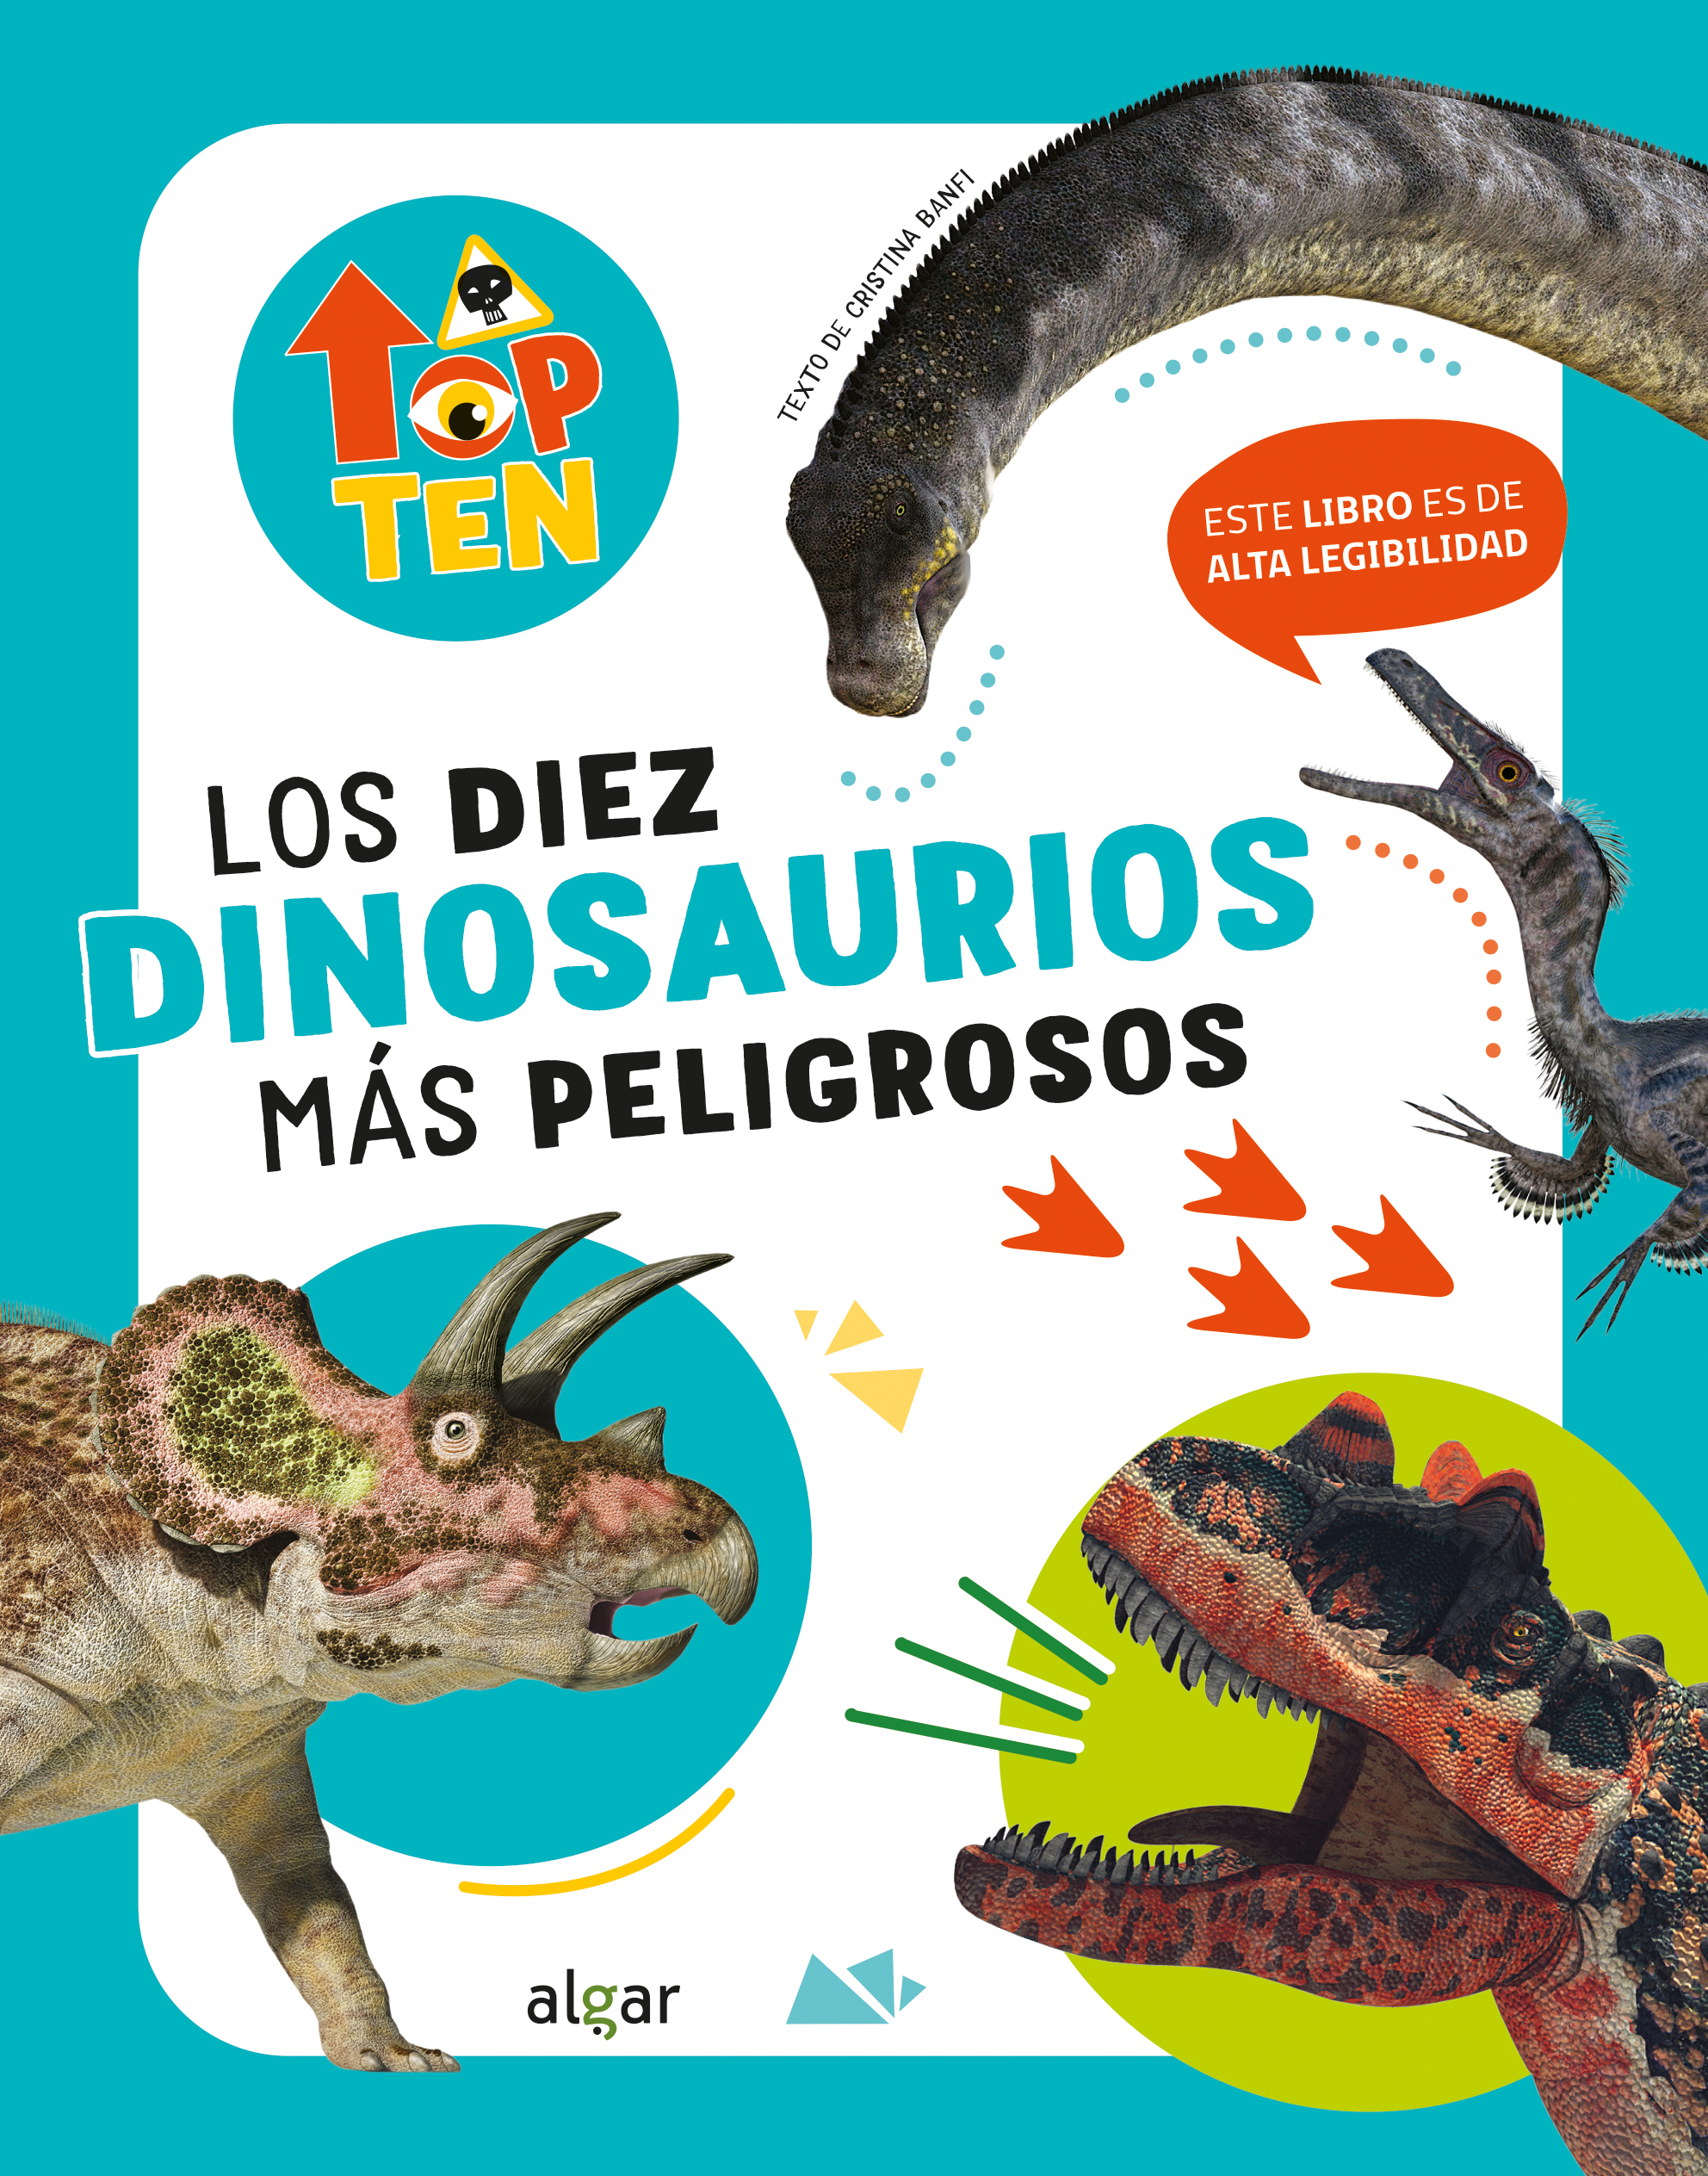 Top Ten Los diez dinosaurios más peligrosos. 9788491426875